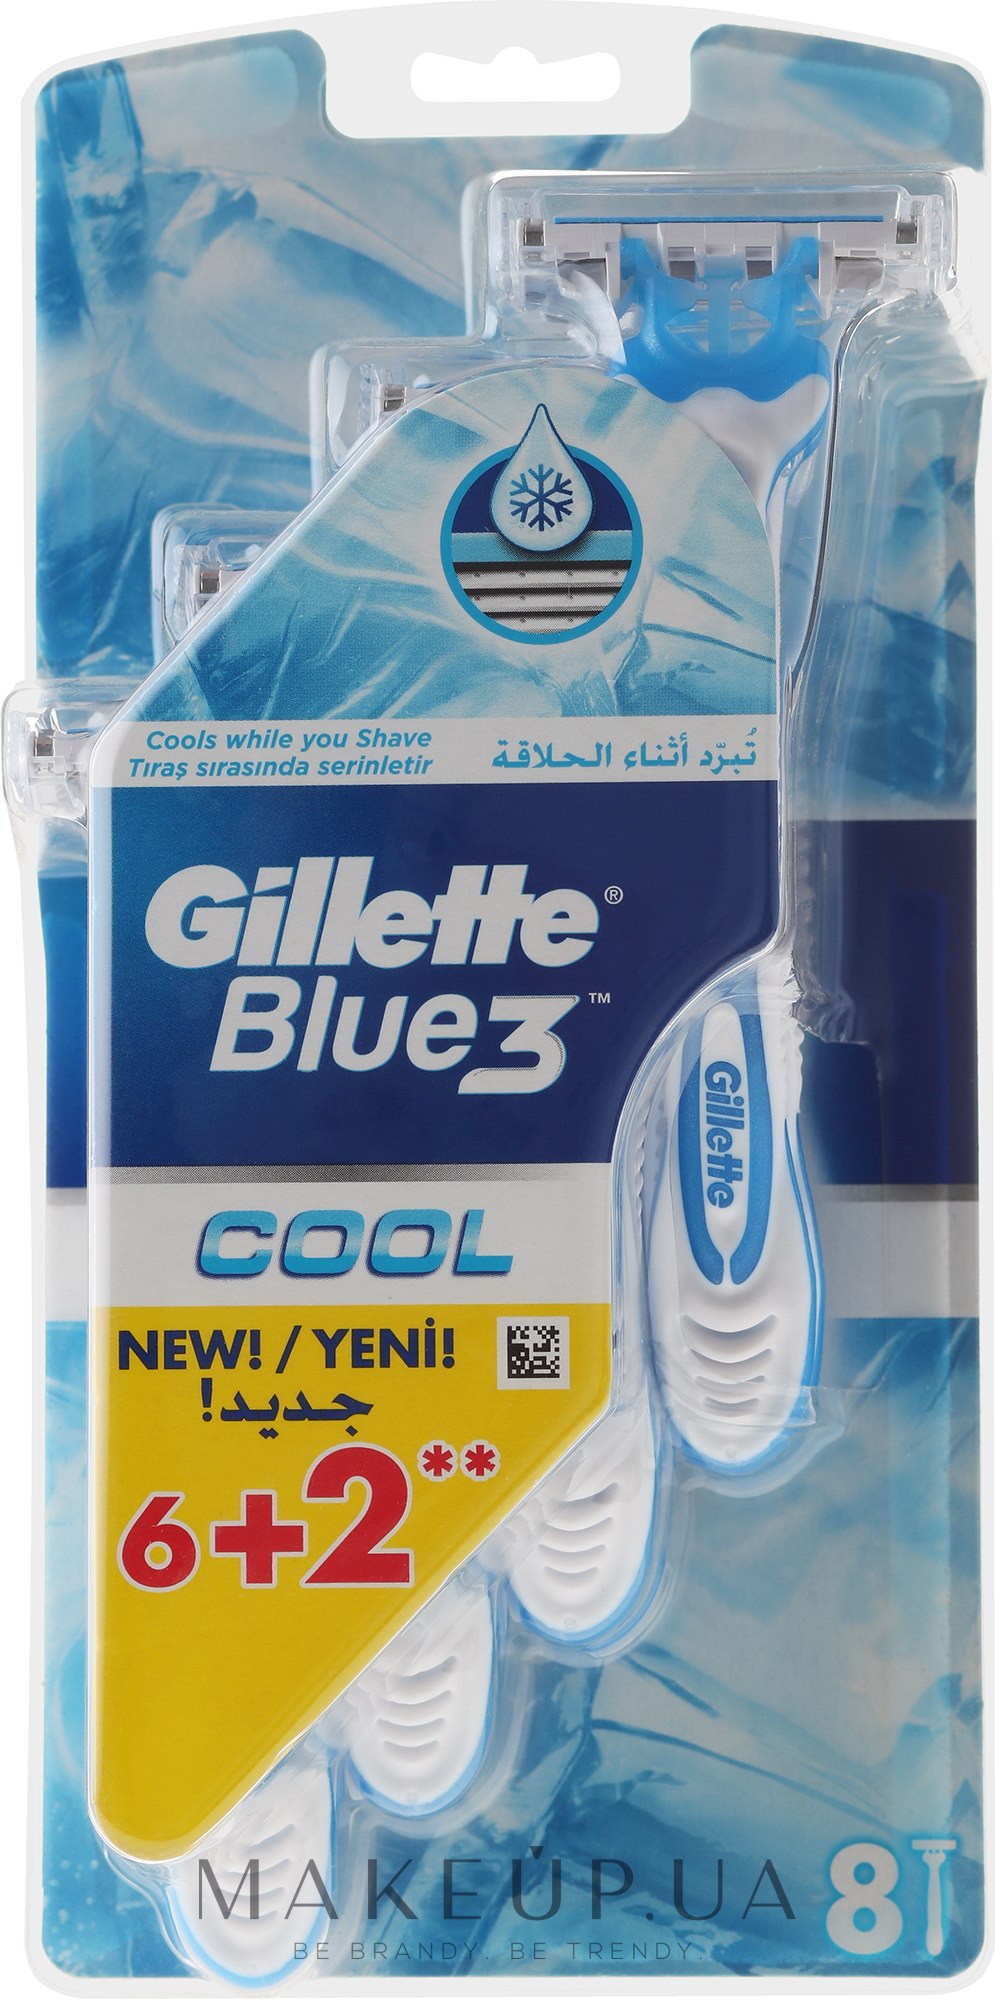 Бритвы одноразовые - Gillette Blue 3 Cool 6+2 шт  — фото 8шт